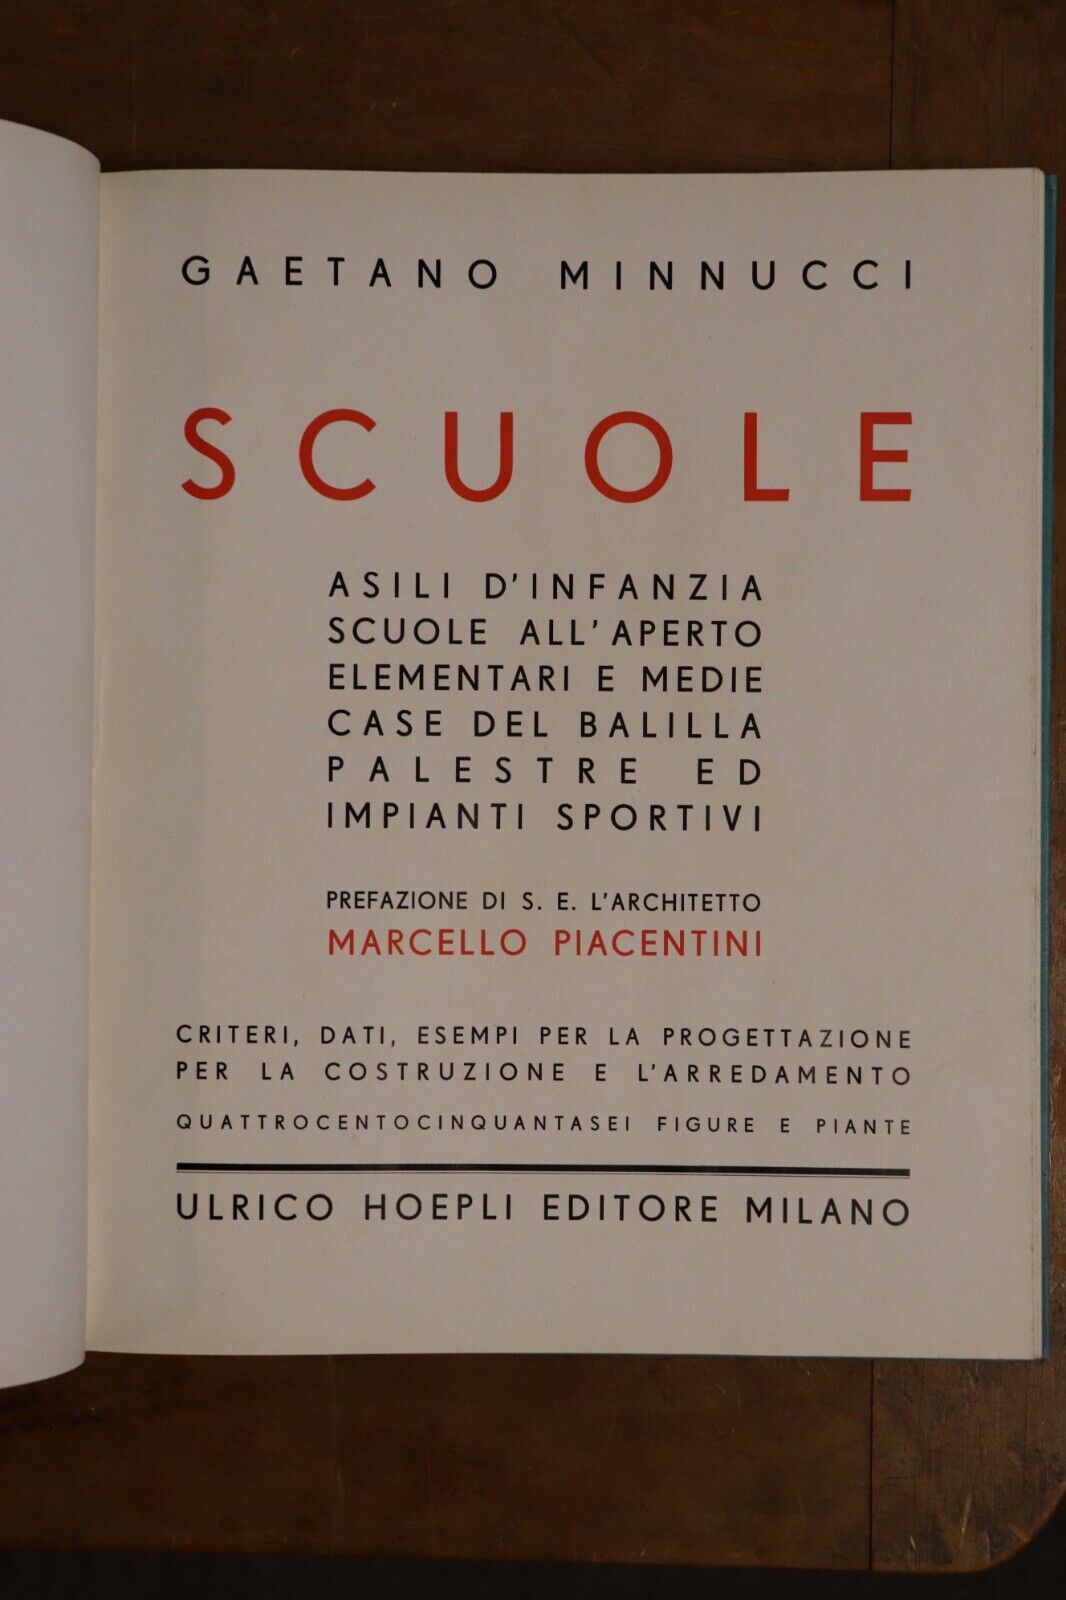 Scuole by Gaetano Minnucci - 1936 - Rare Italian Architecture Book 1st Edition - 0